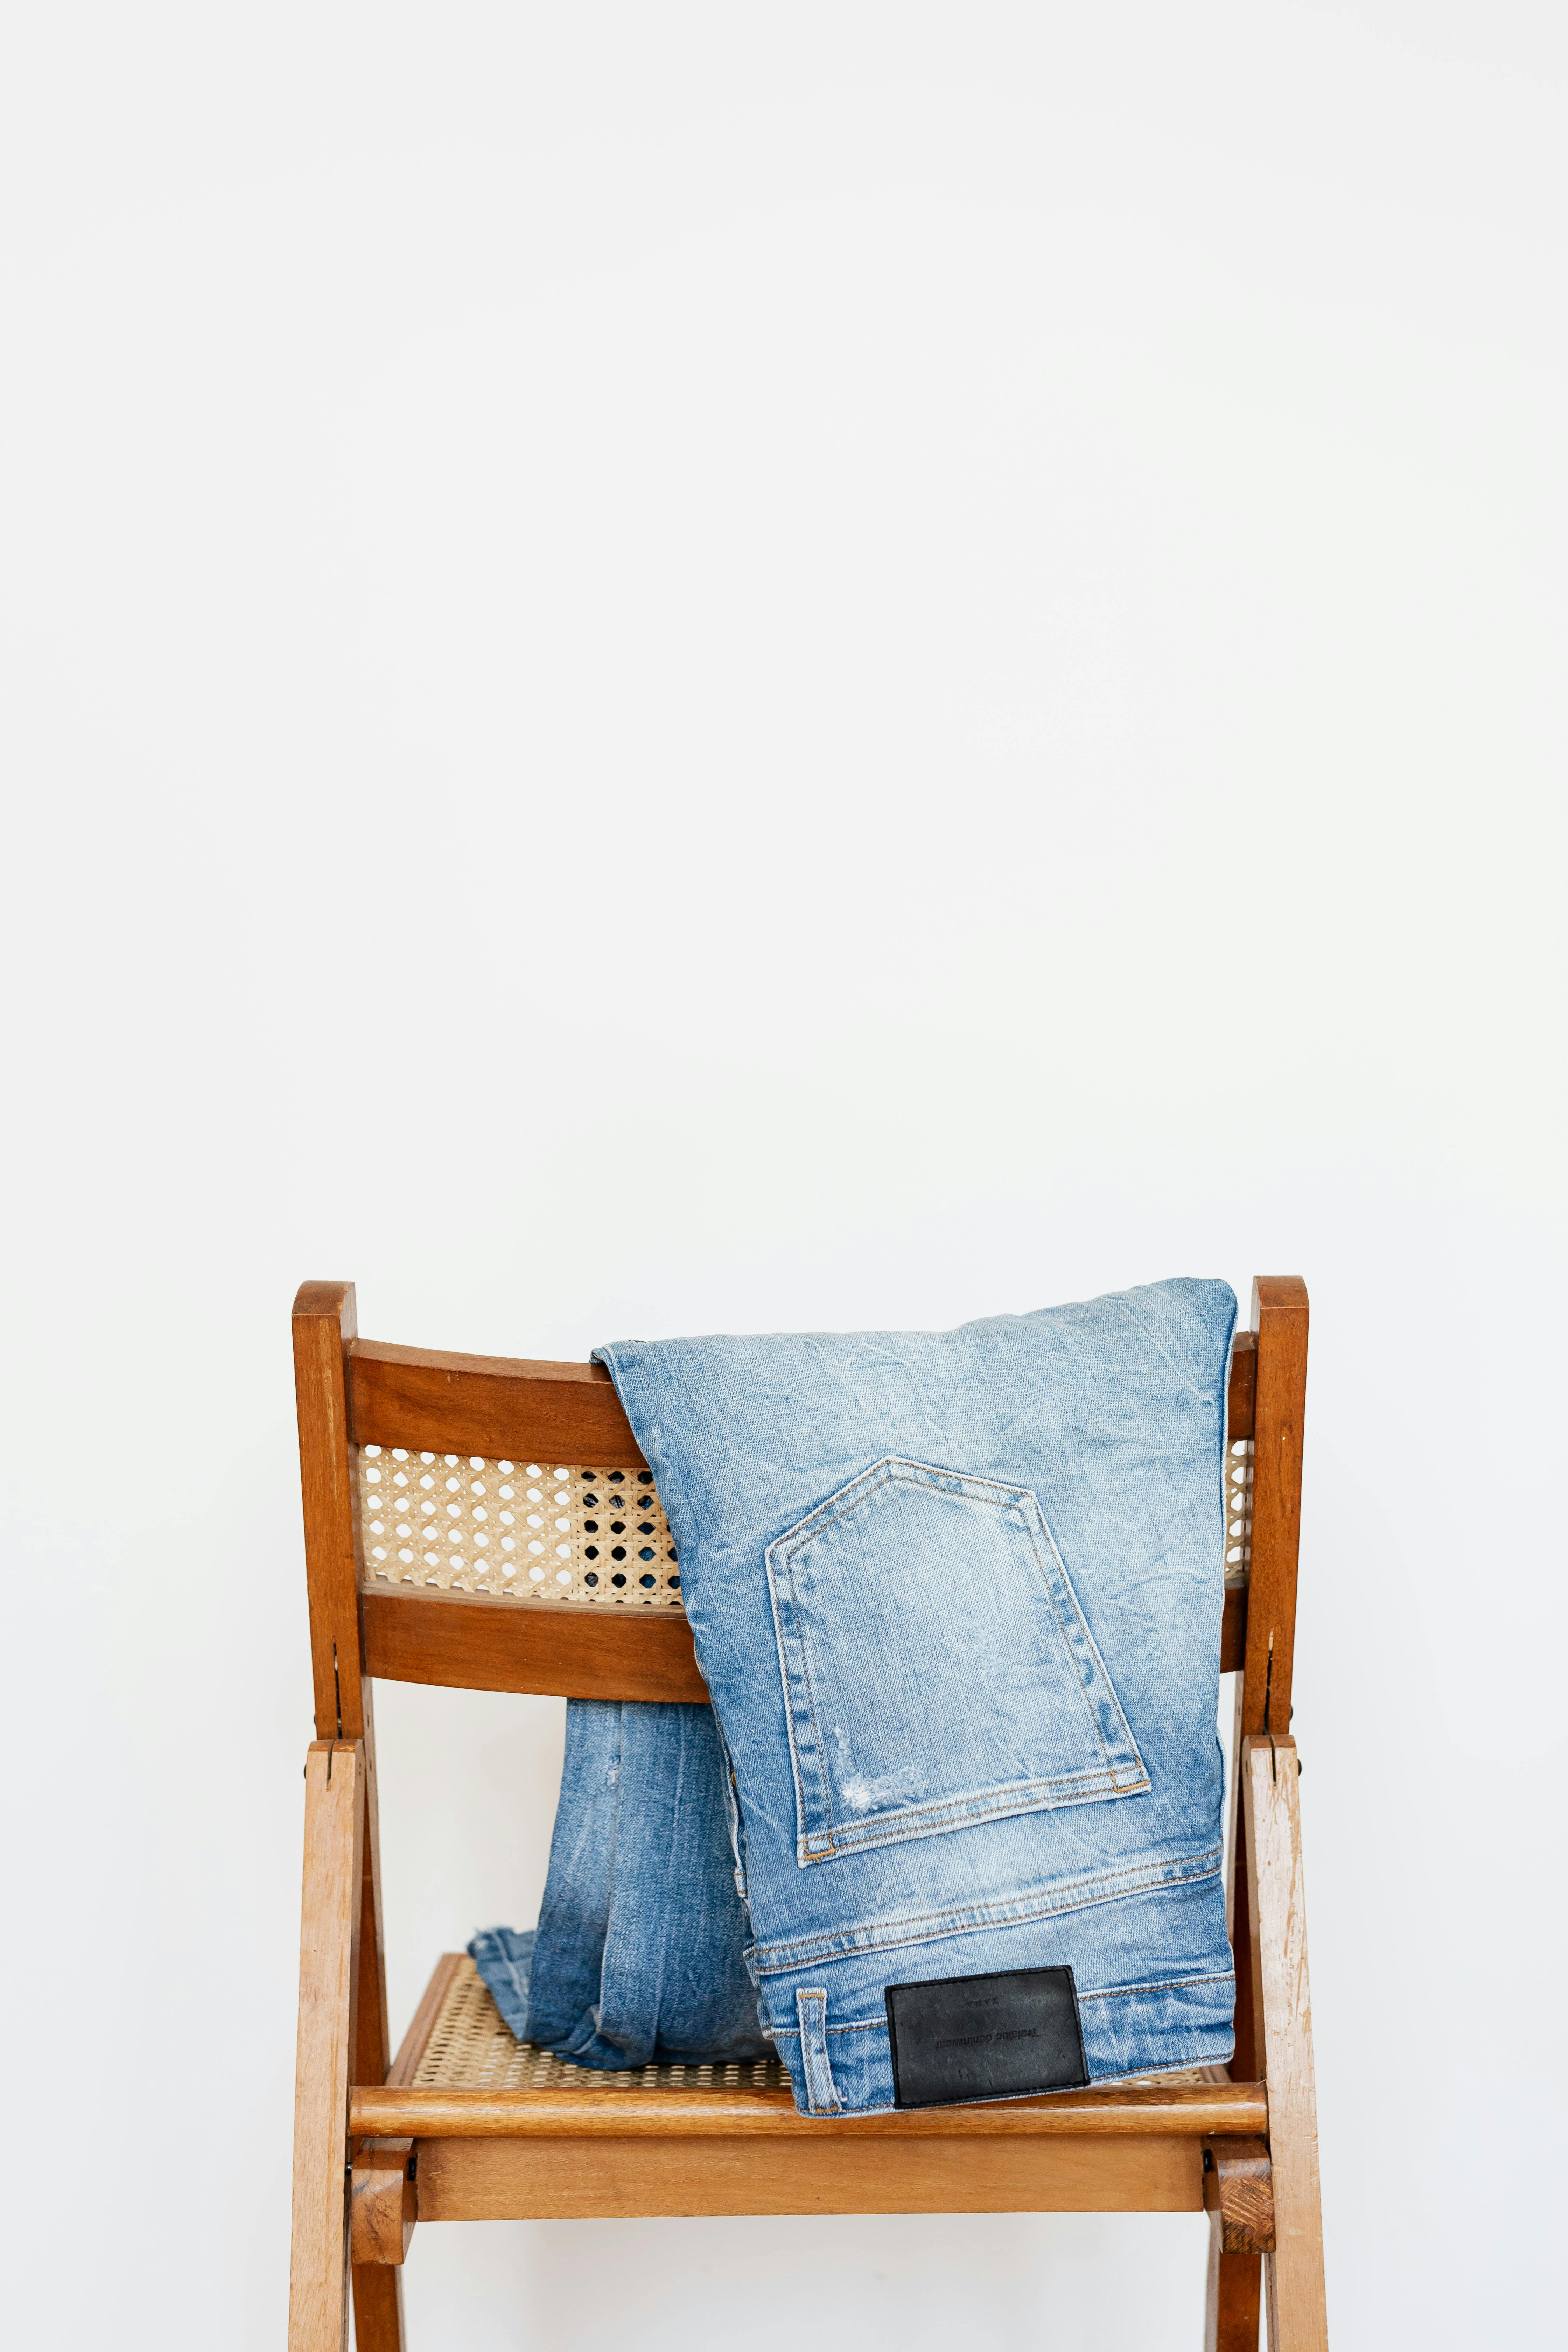 Un jean accrochée à une chaise | Source : Pexels